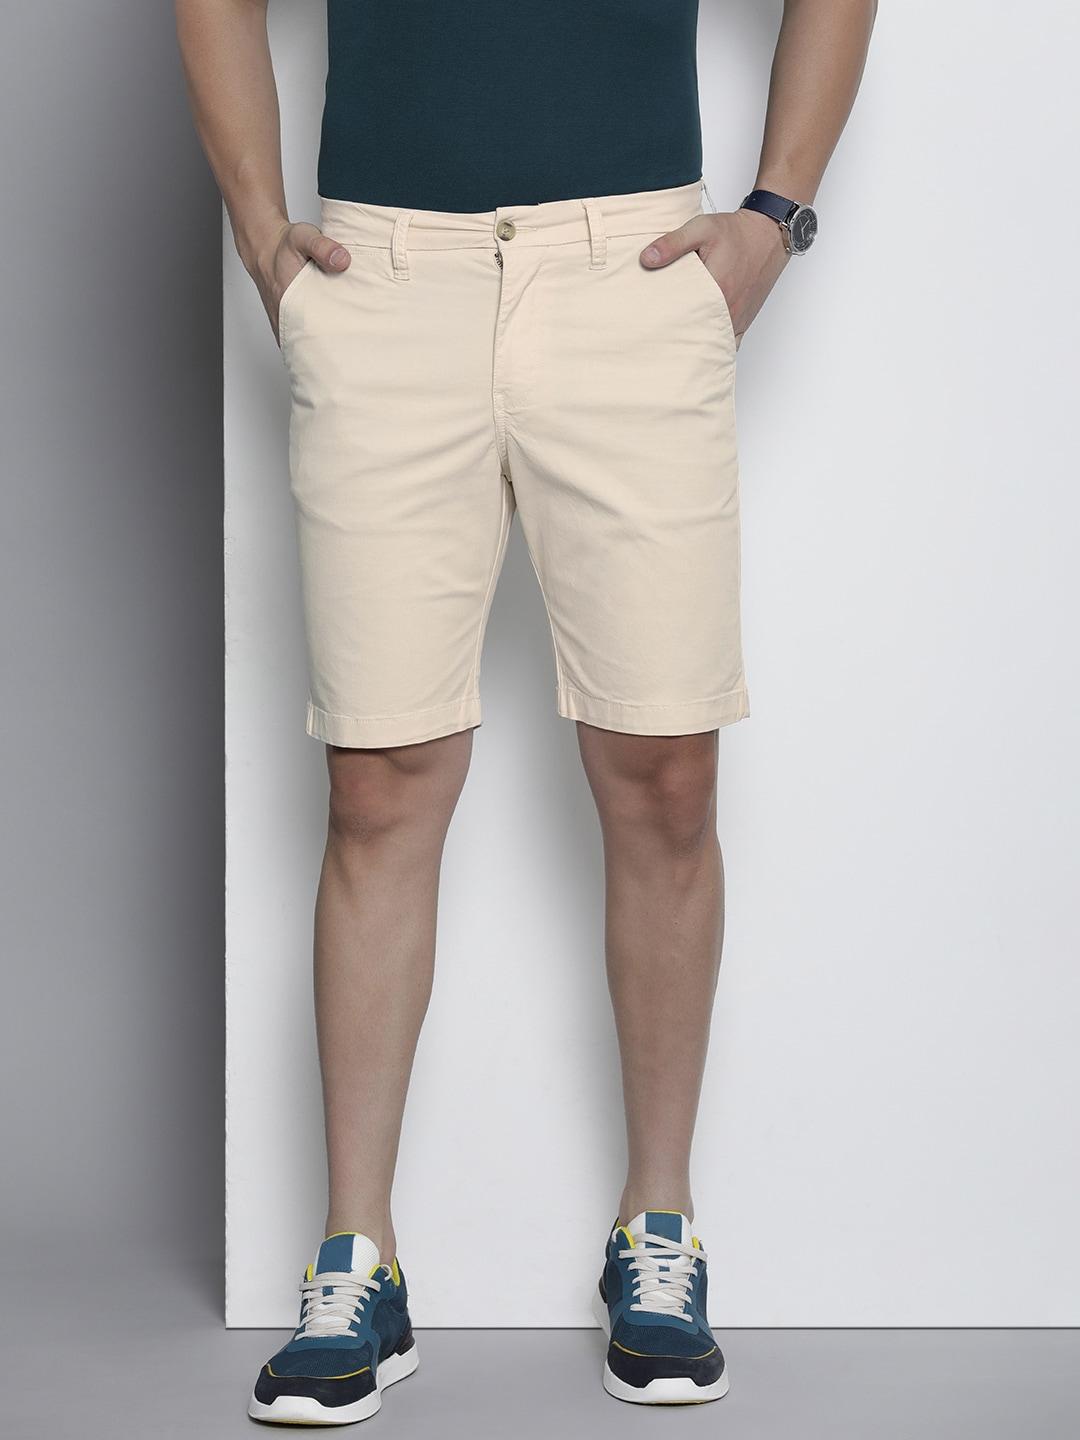 nautica-men-denim-shorts